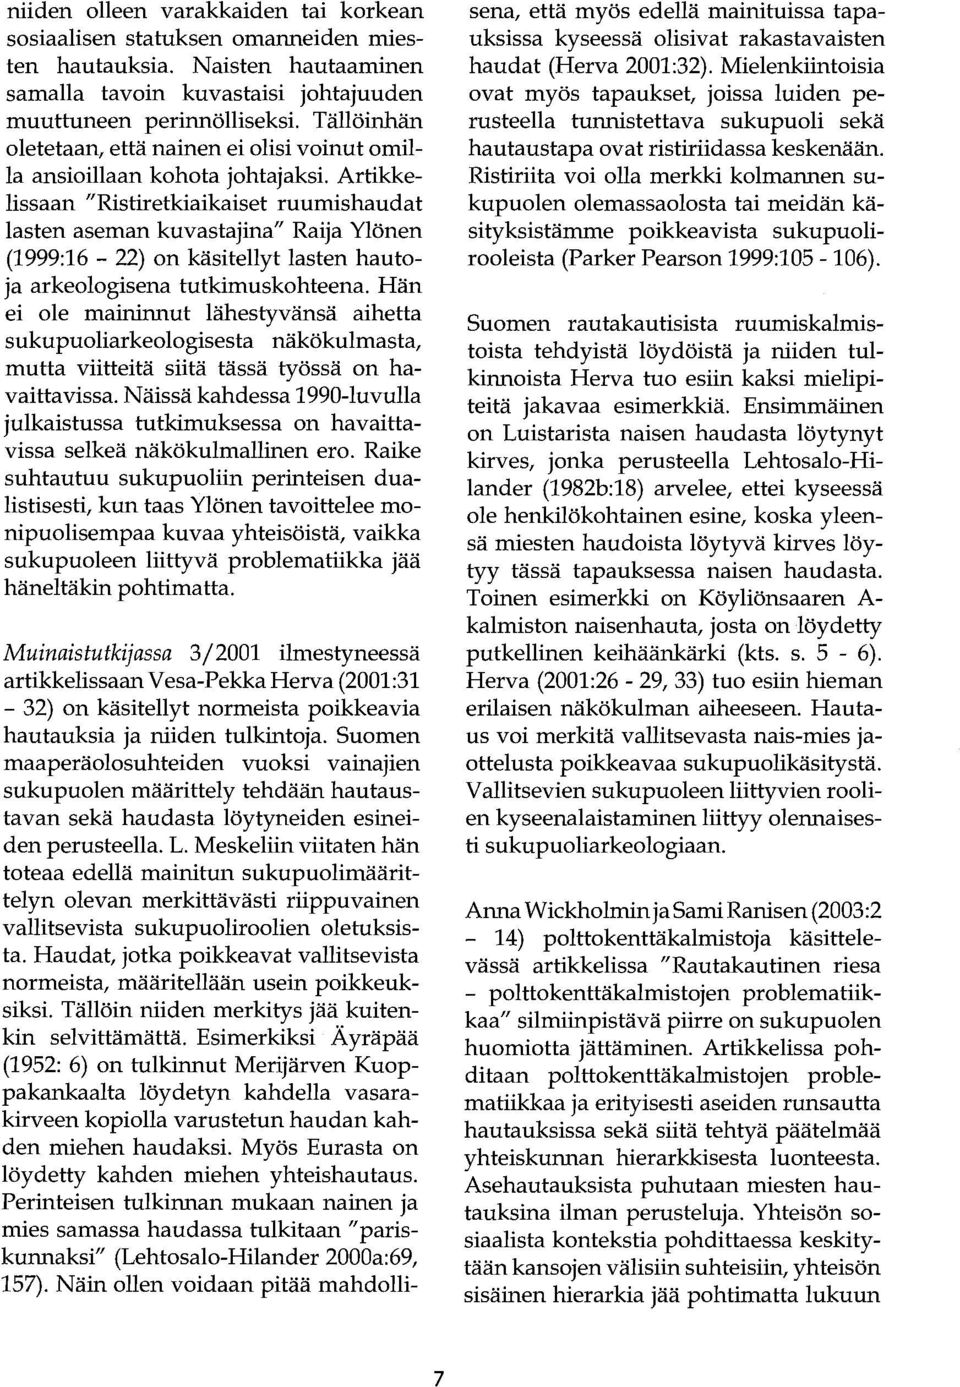 Artikkelissaan "Ristiretkiaikaiset ruumishaudat lasten aseman kuvastajina" Raija Ylönen (1999:16-22) on käsitellyt lasten hautoja arkeologisena tutkimuskohteena.